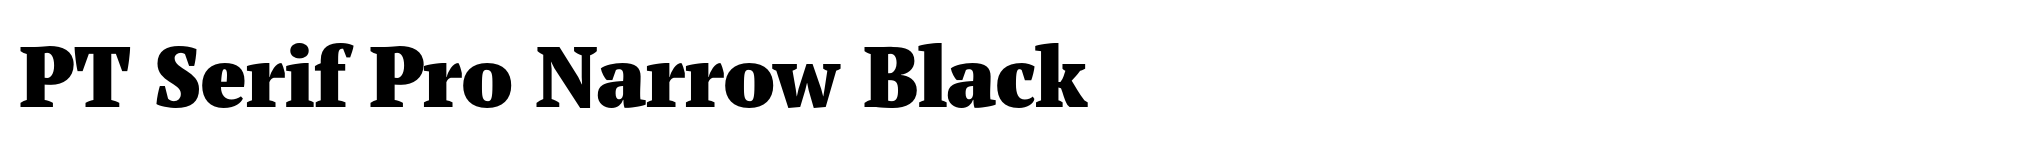 PT Serif Pro Narrow Black image